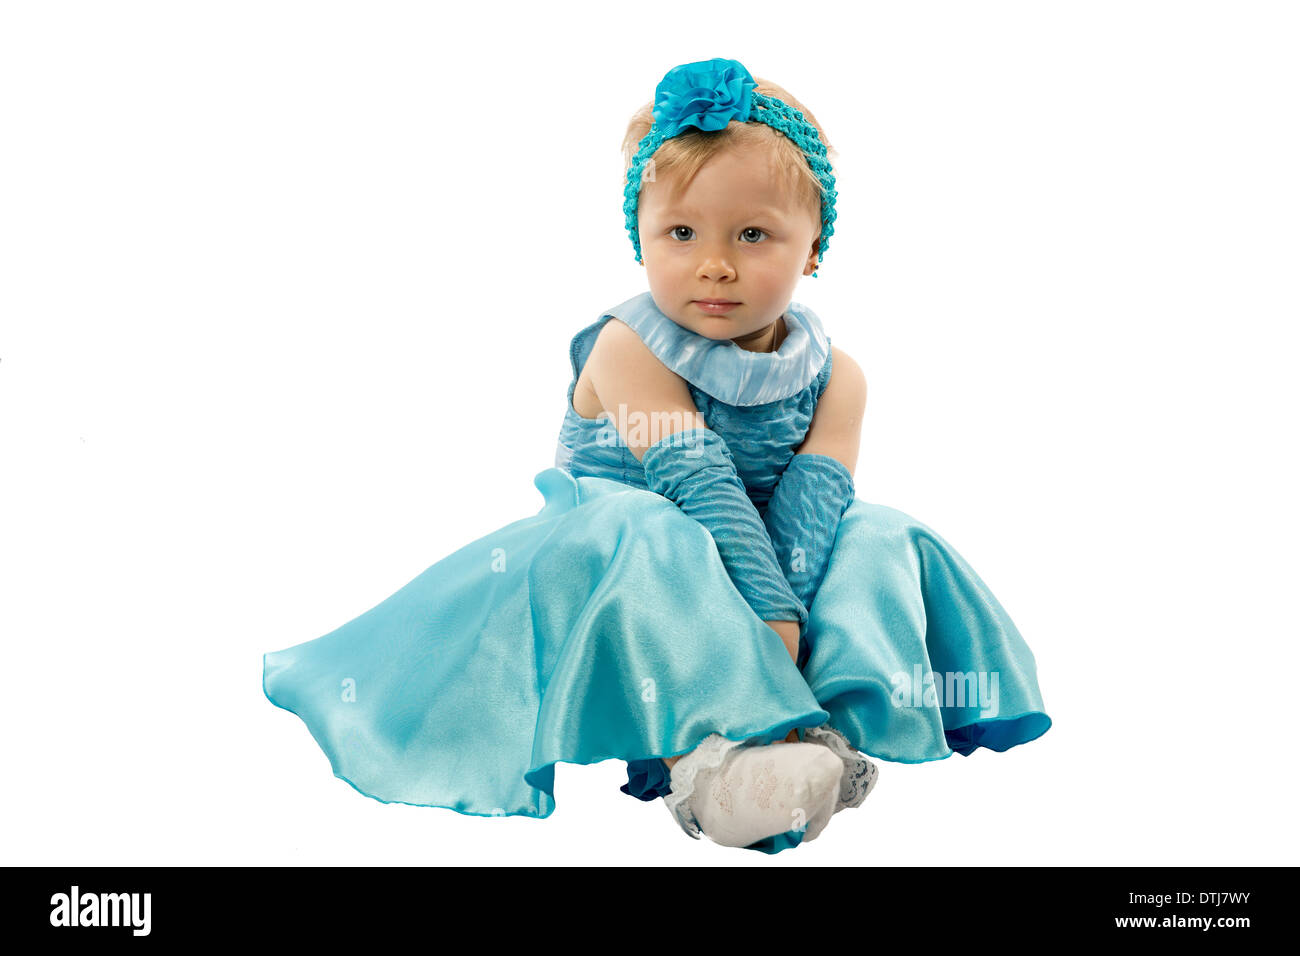 Kleines nettes Kind Mädchen mit blauen Augen, die isoliert auf weißem Hintergrund. Verwenden Sie es für Baby, Elternschaft oder Liebe Konzept Stockfoto